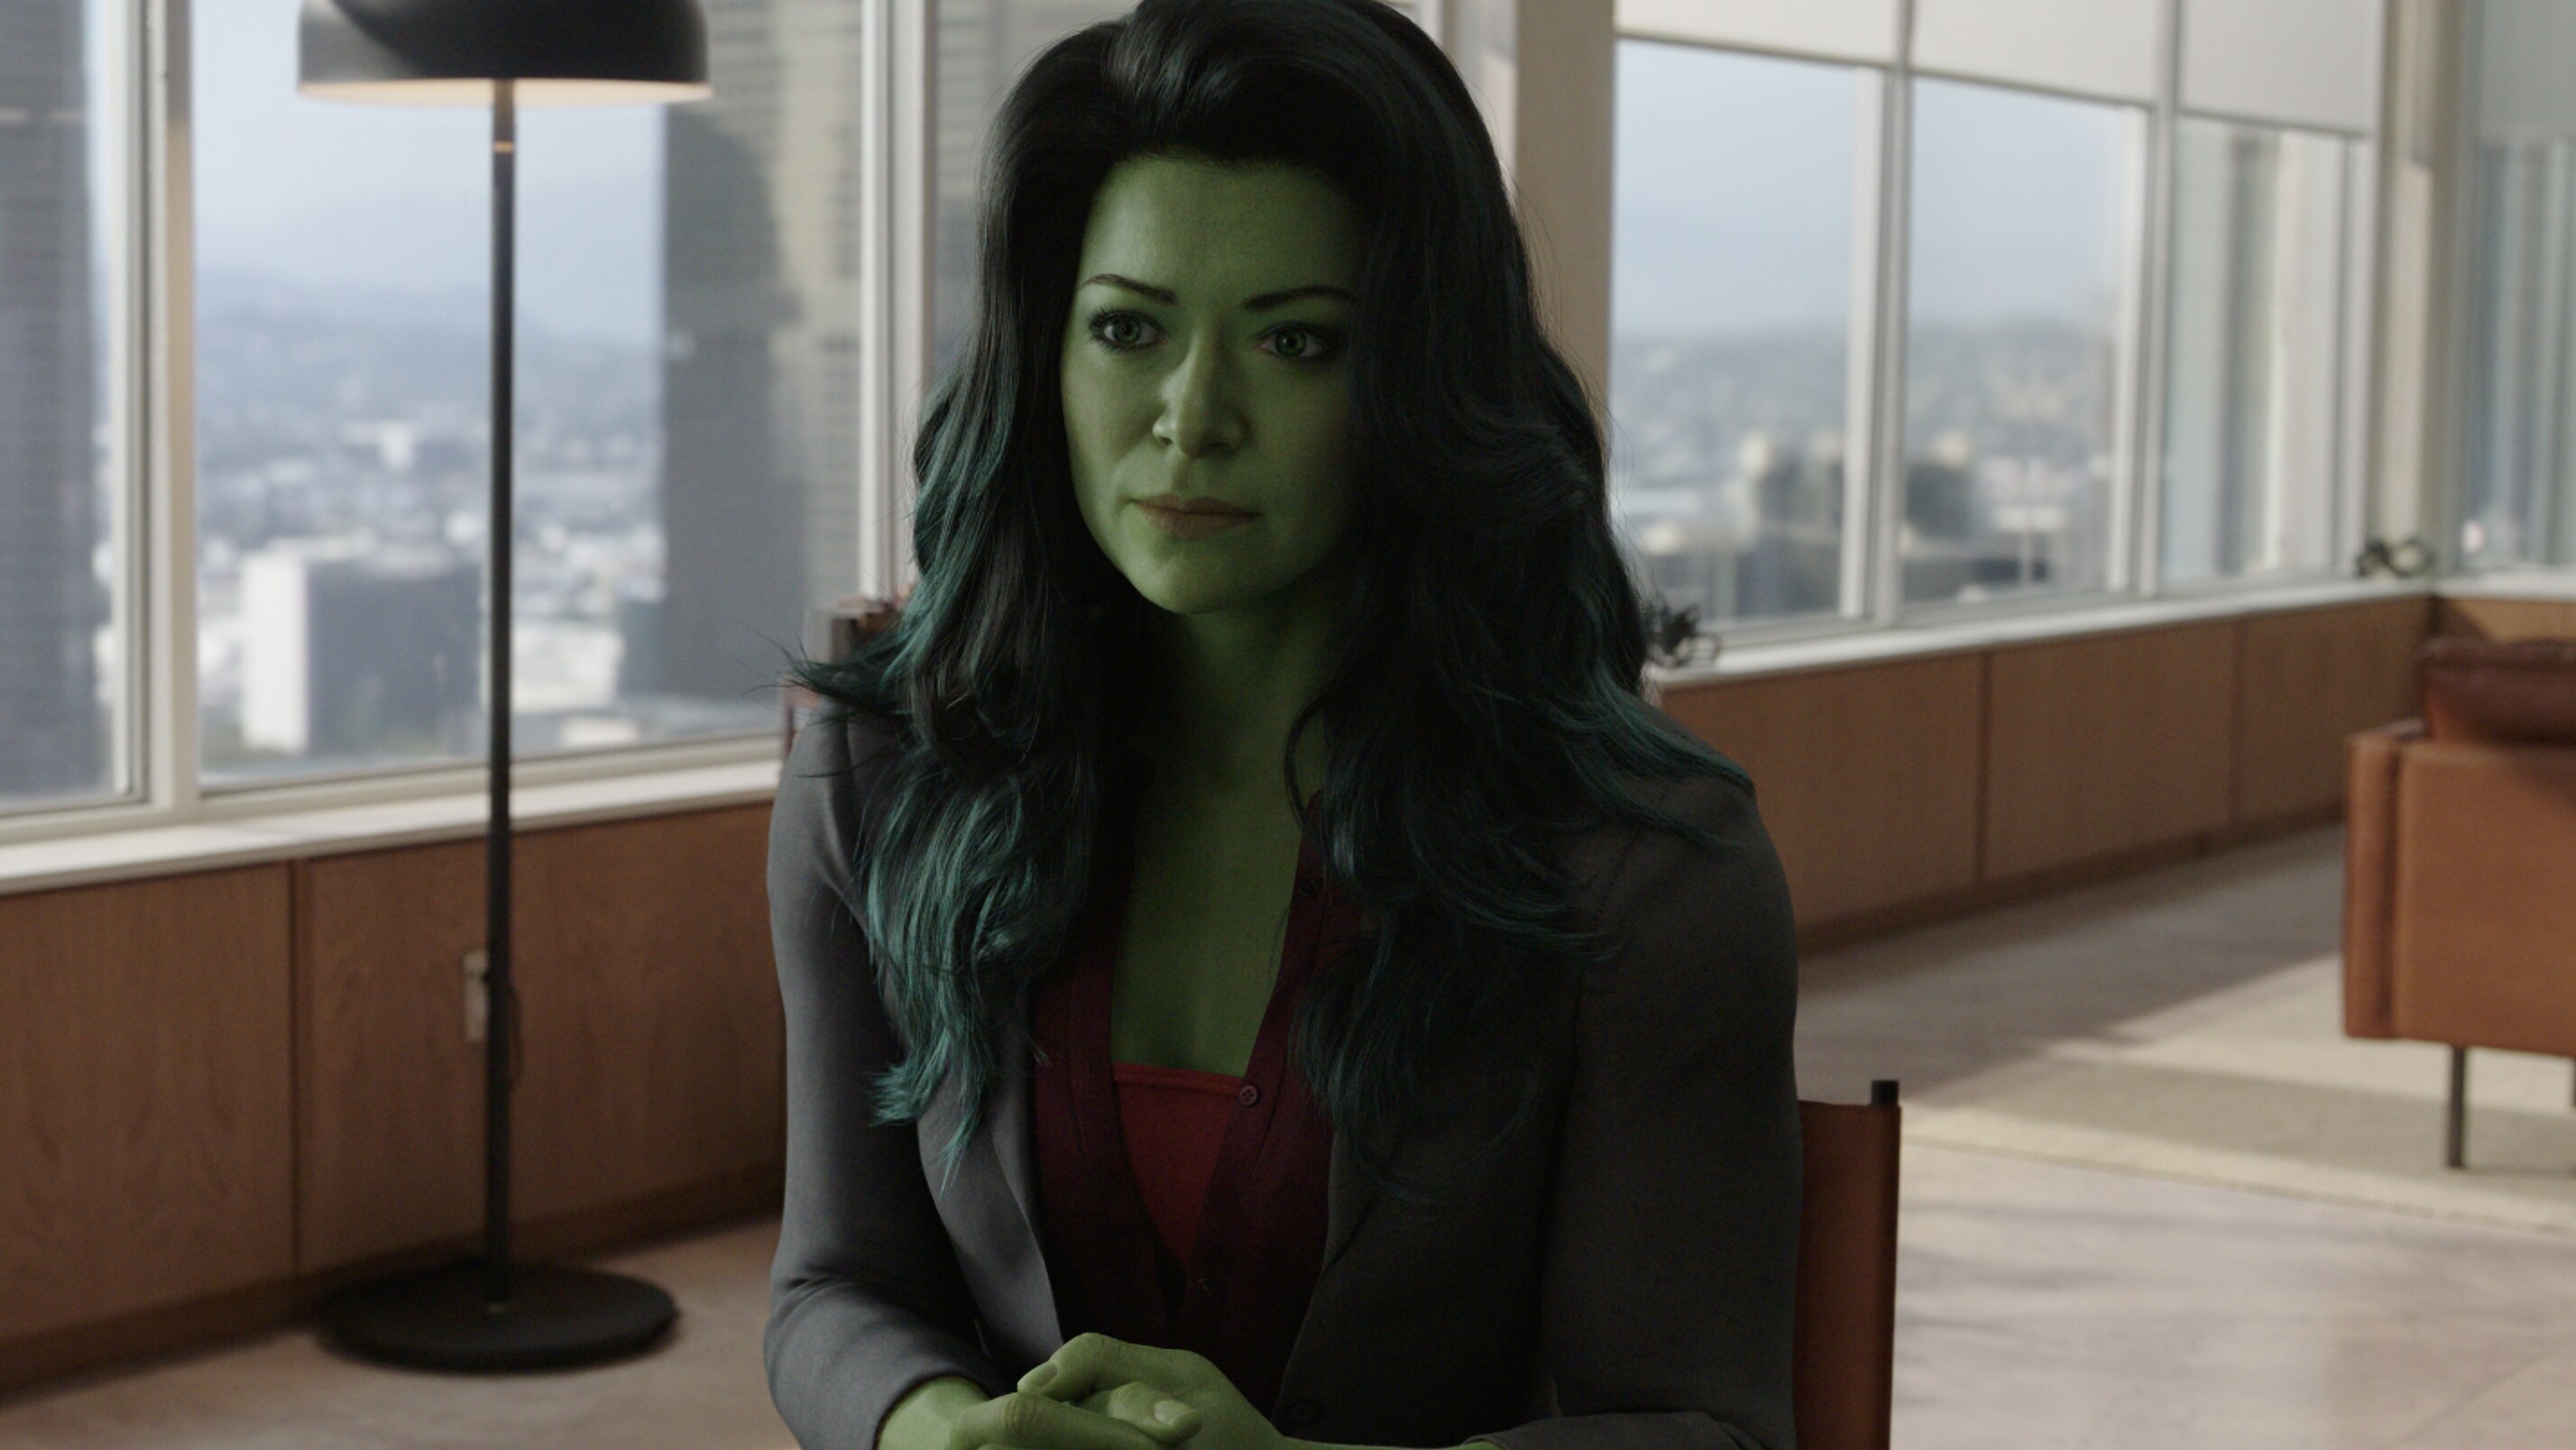 Marvel muda a data de lançamento de Mulher-Hulk: Defensora de Heróis